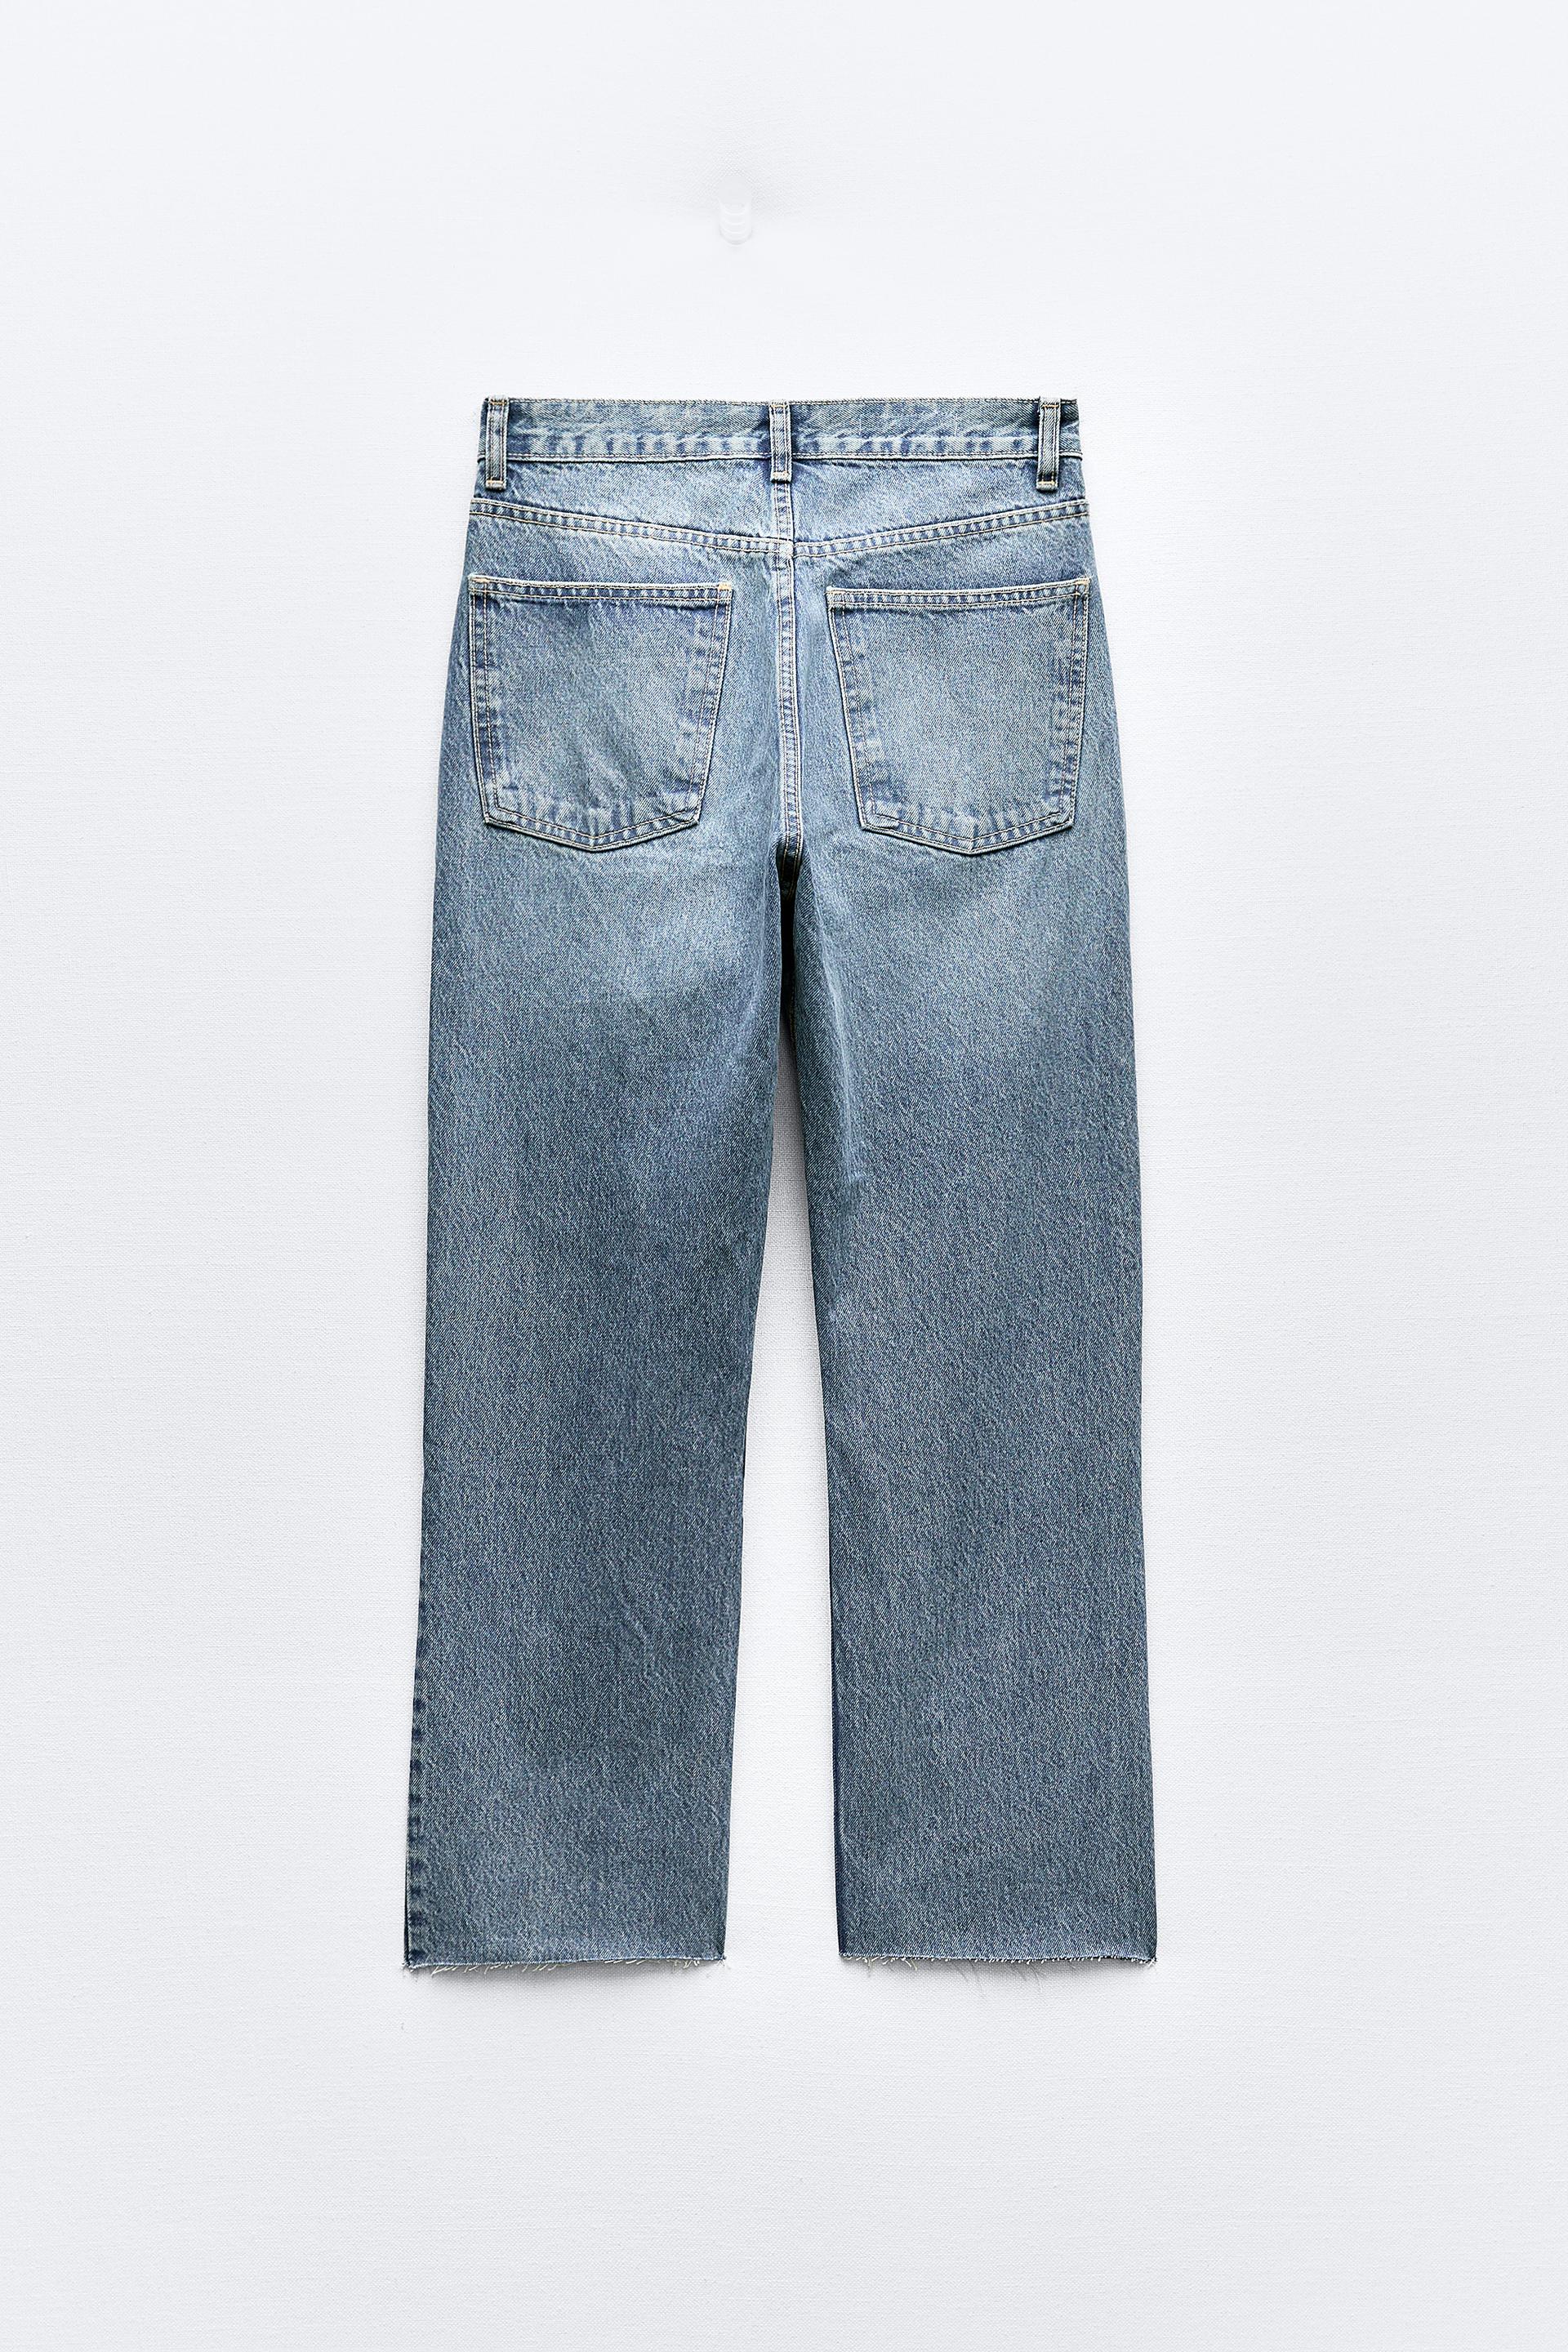 TRF wide leg jeans in light blue from Zara 🥰